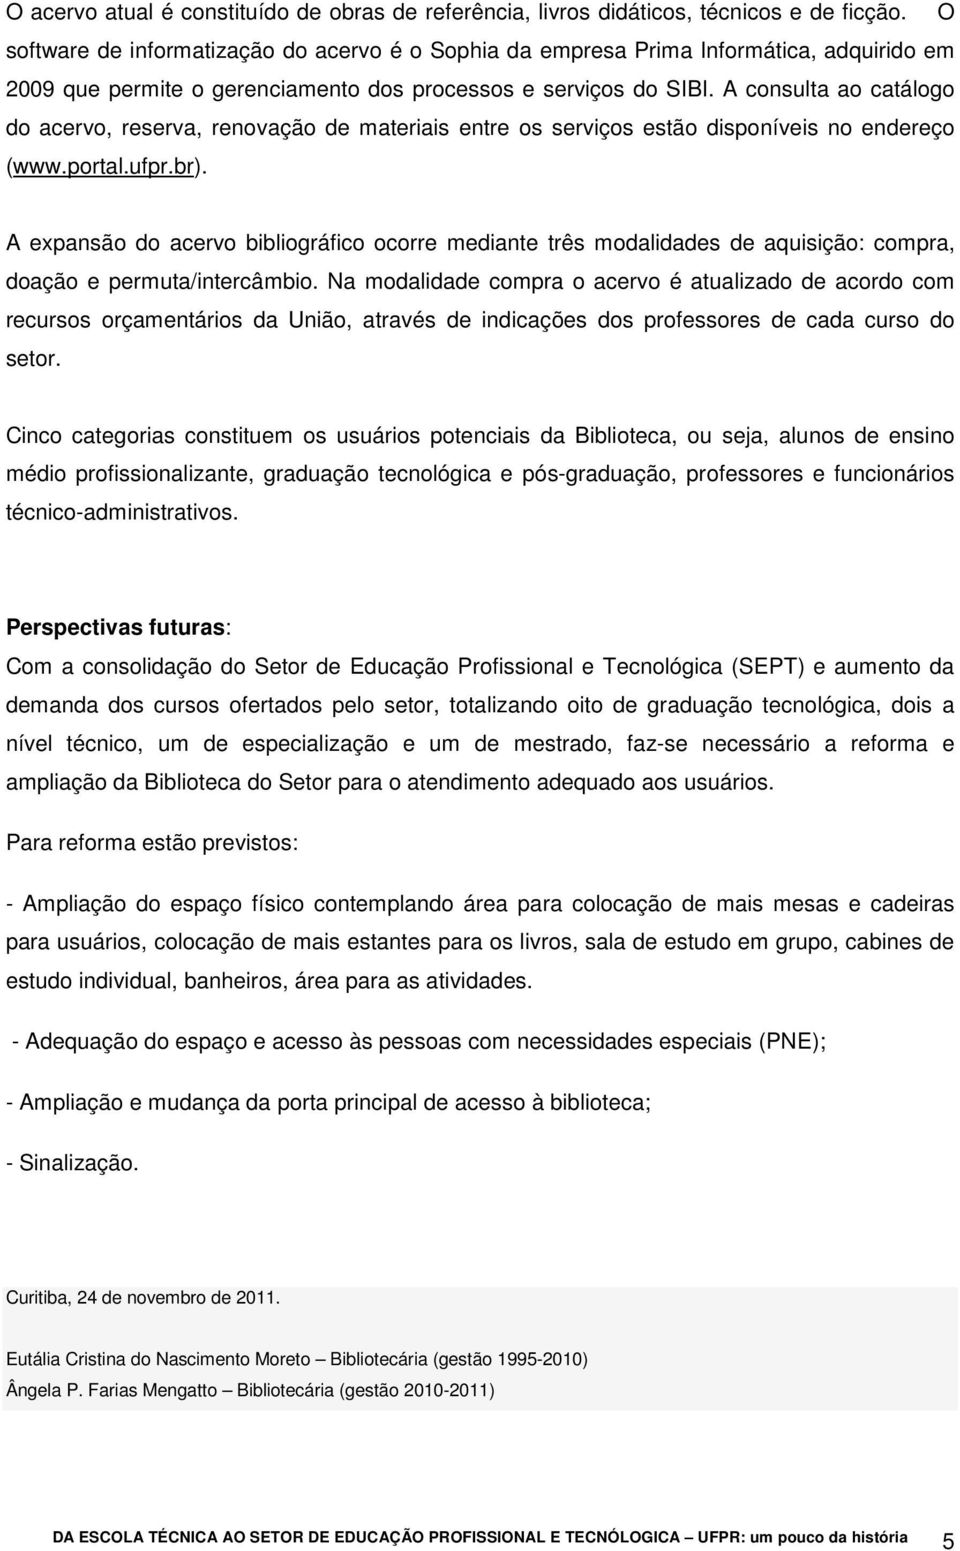 A consulta ao catálogo do acervo, reserva, renovação de materiais entre os serviços estão disponíveis no endereço (www.portal.ufpr.br).